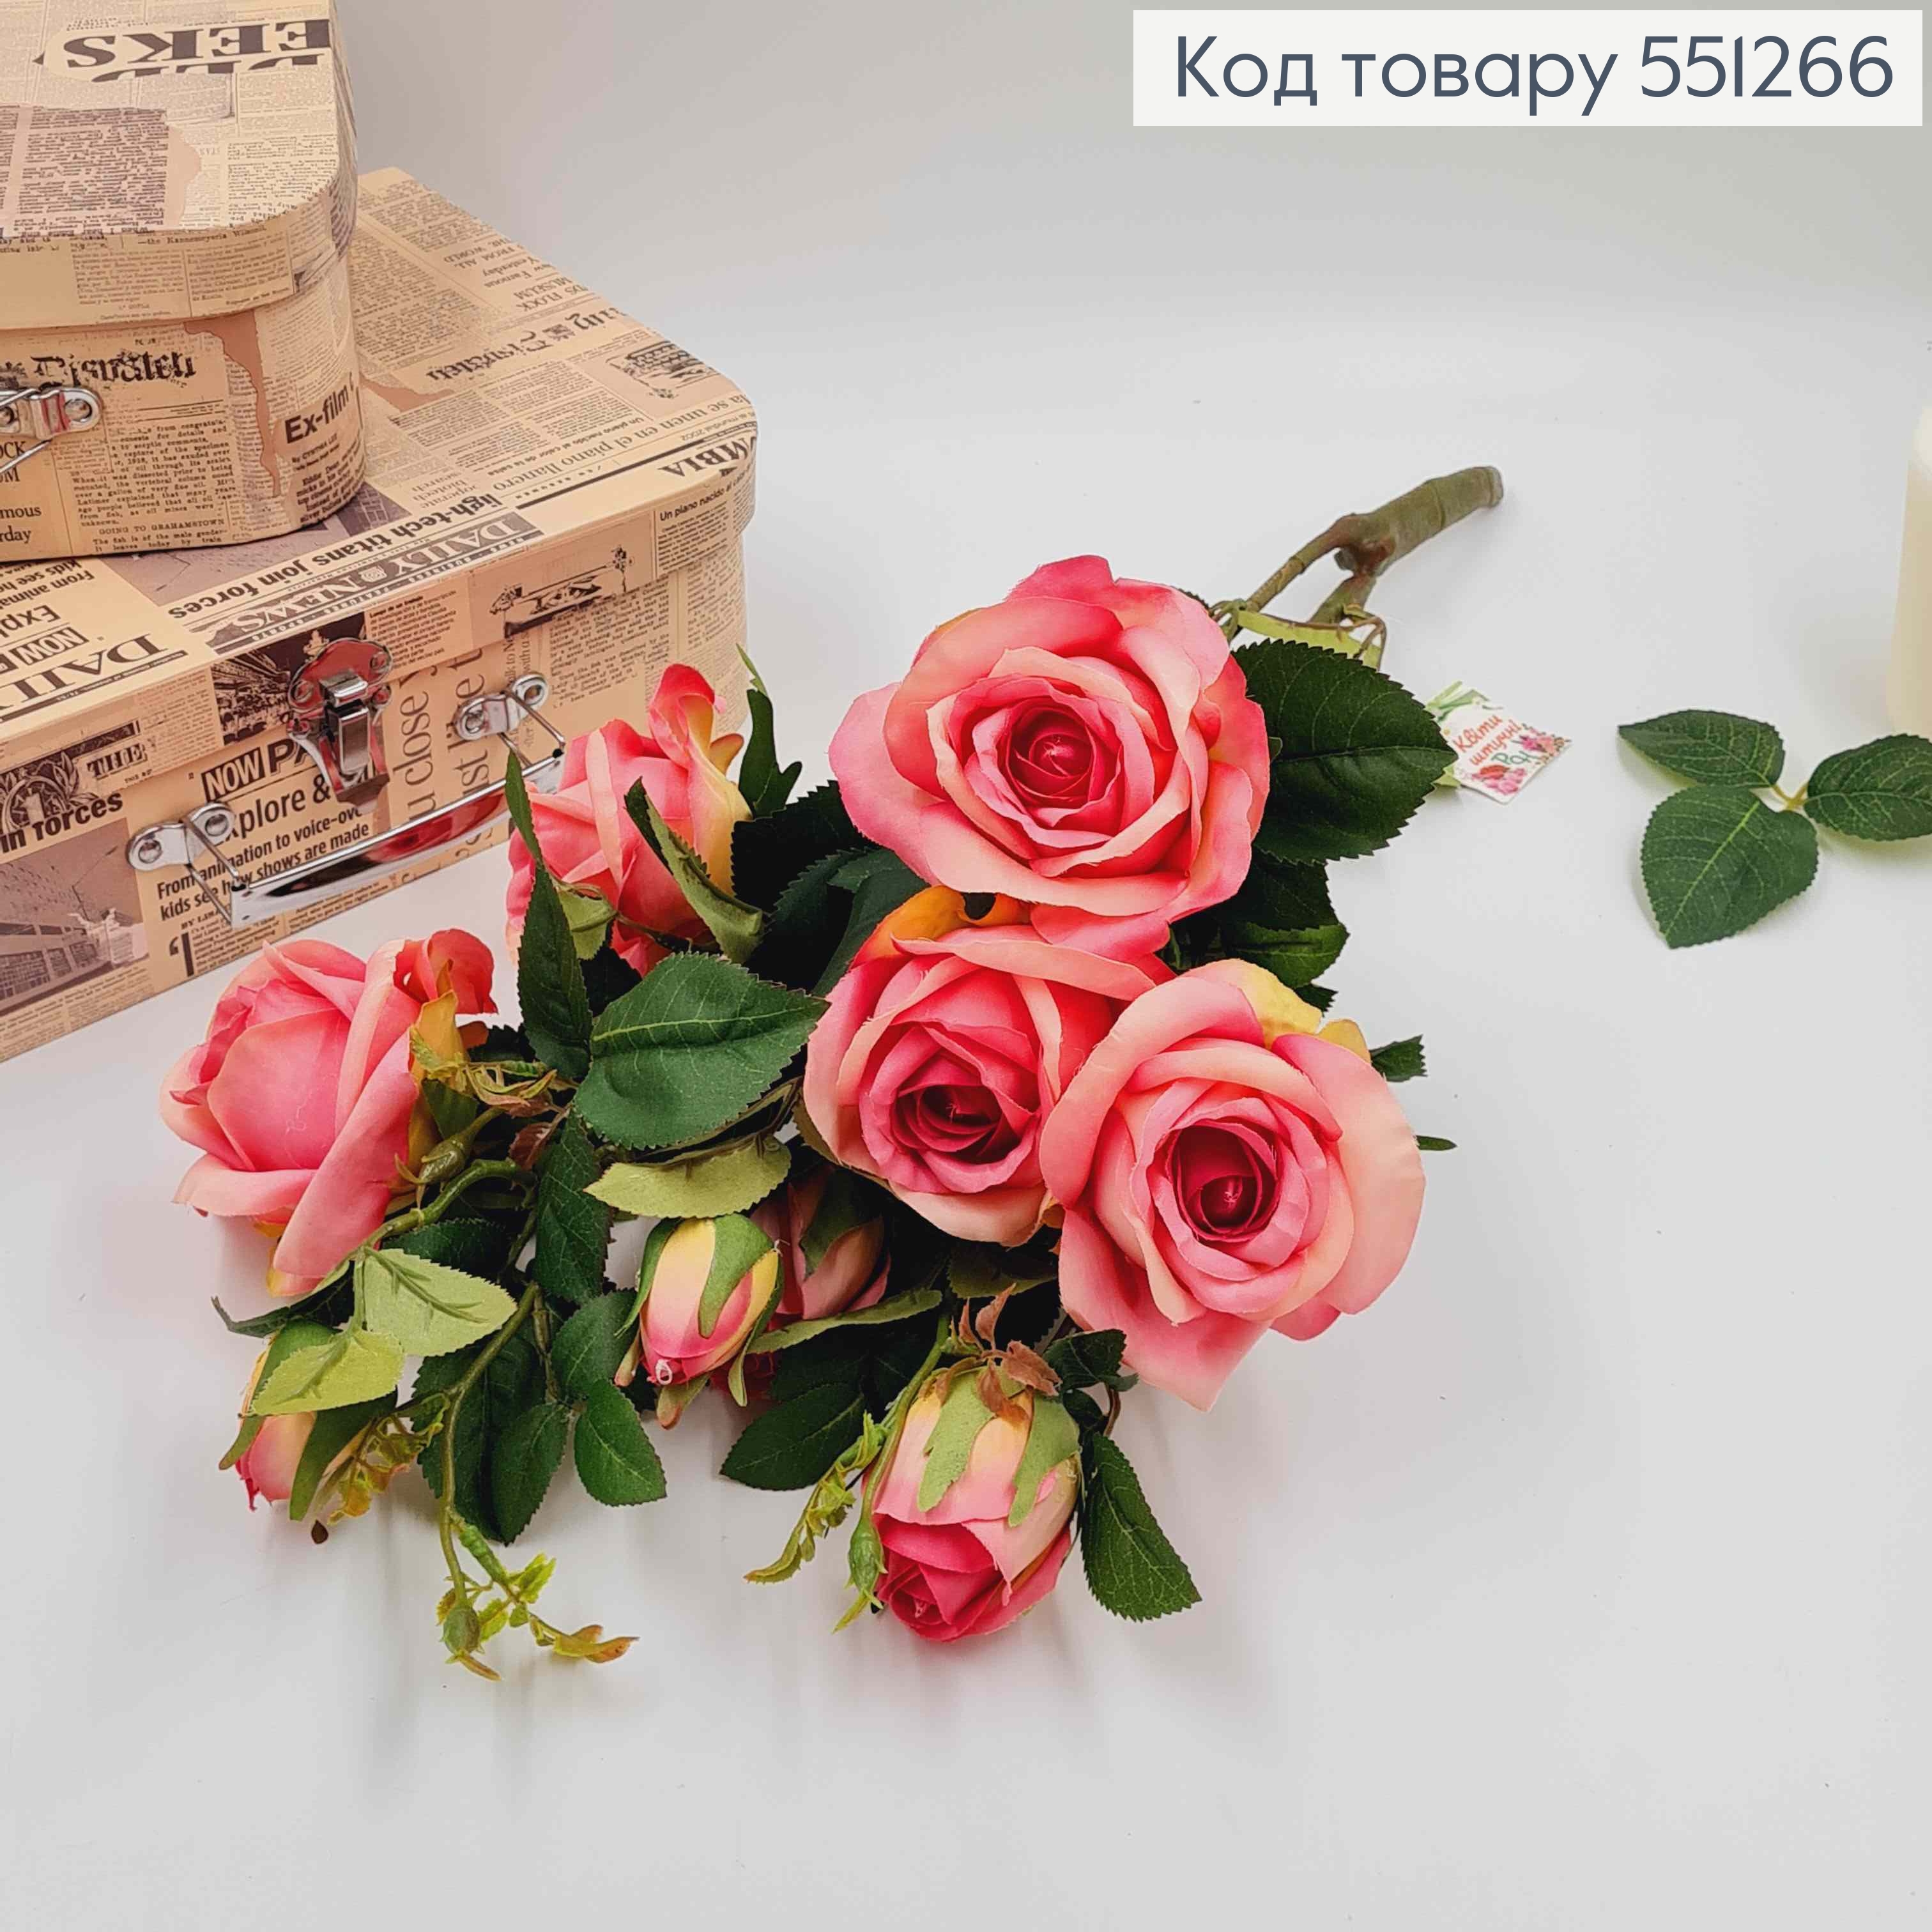 Композиція "Гілочка з РОЖЕВИМИ трояндами" висотою 55см (дуже гарні, як  живі) 551266 фото 2